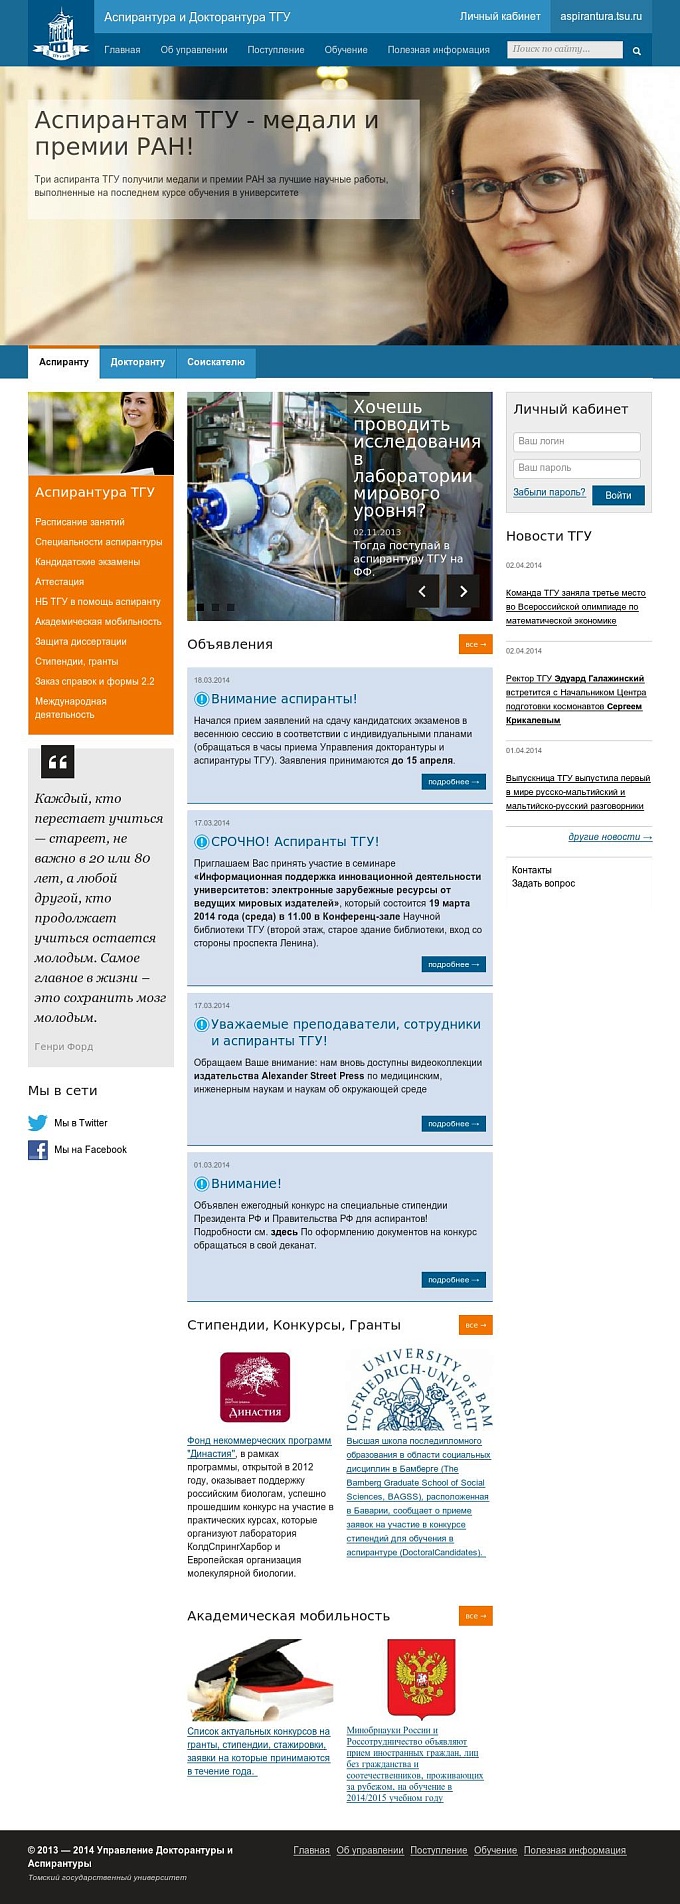 Корпоративный сайт Аспирантура ТГУ | Primosoft, разработка и продвижение сайтов.